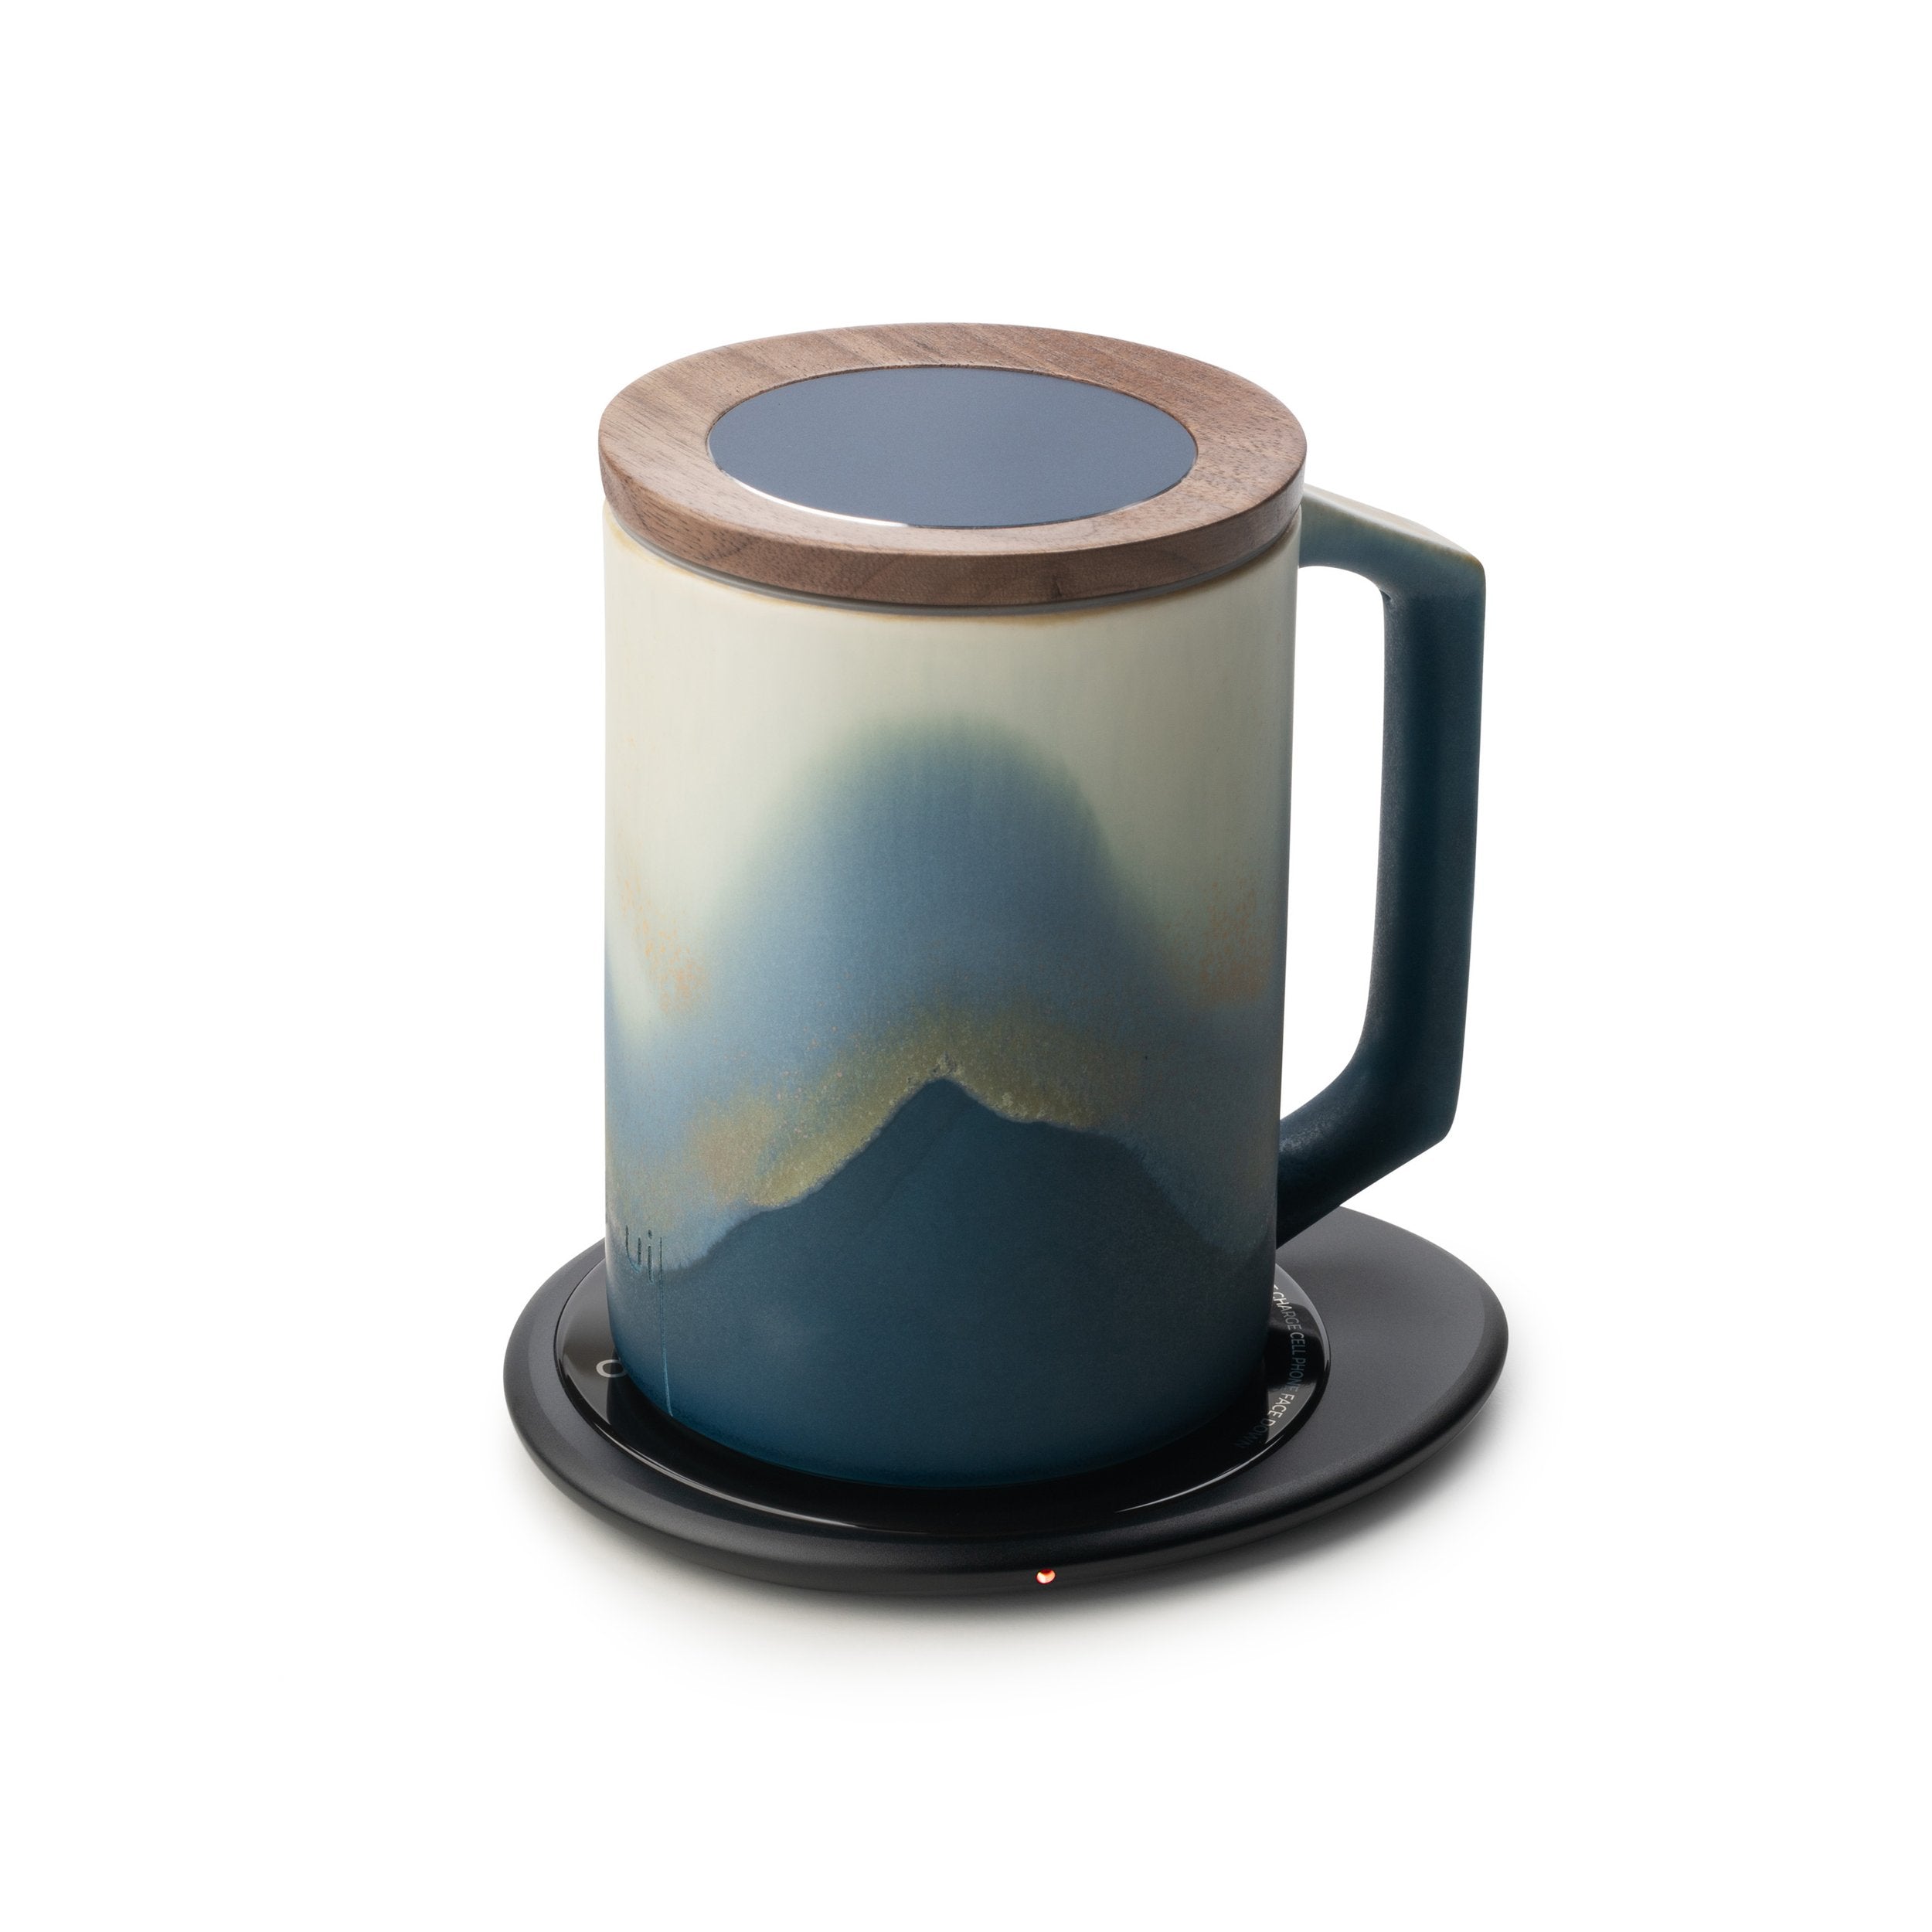 Blue mug with lid designed on black pebble heating pad